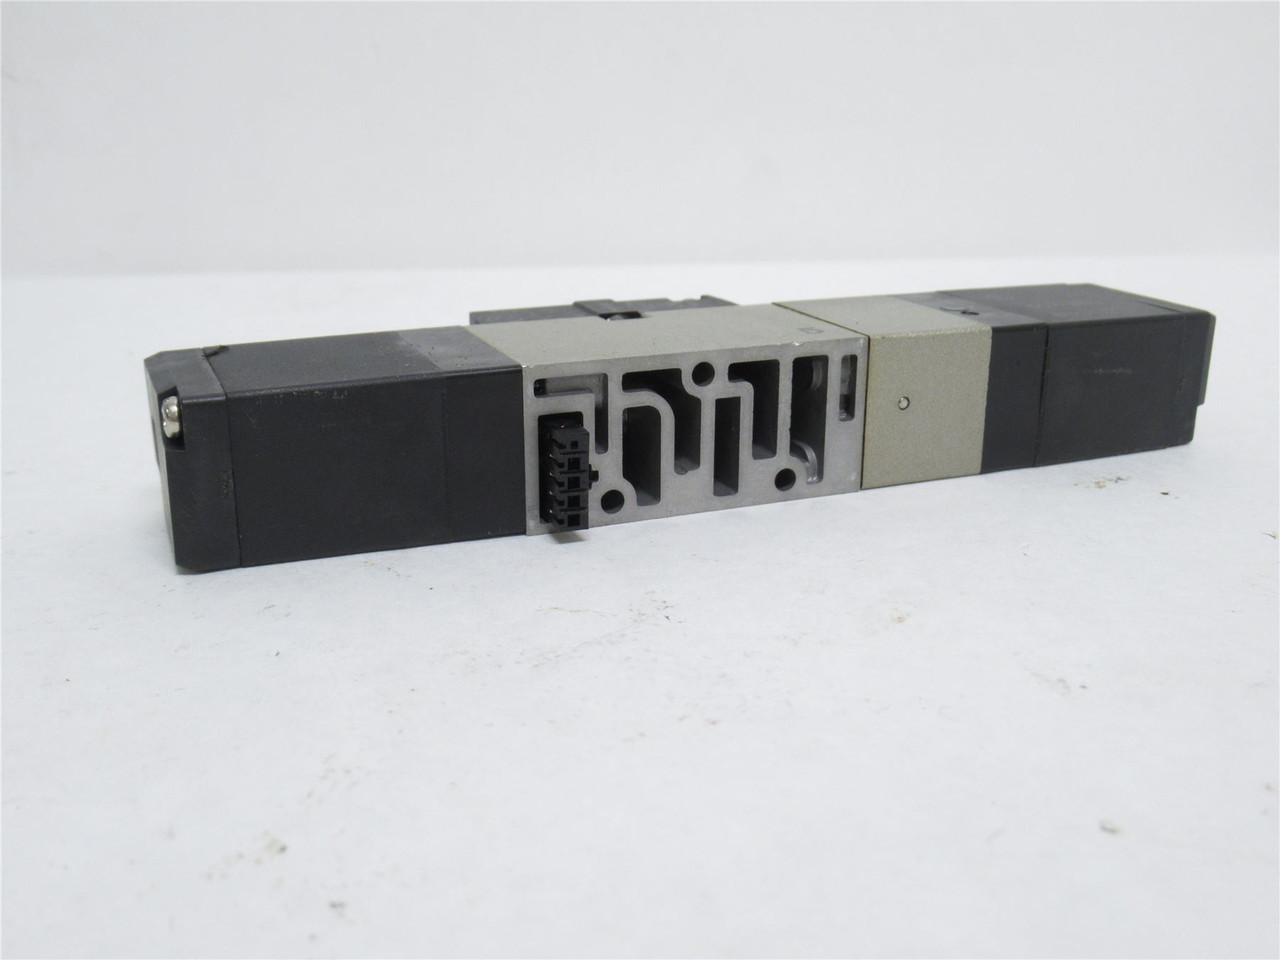 SMC NVFS2500-5FZ; Solenoid Valve; 0.15-1.0MPa